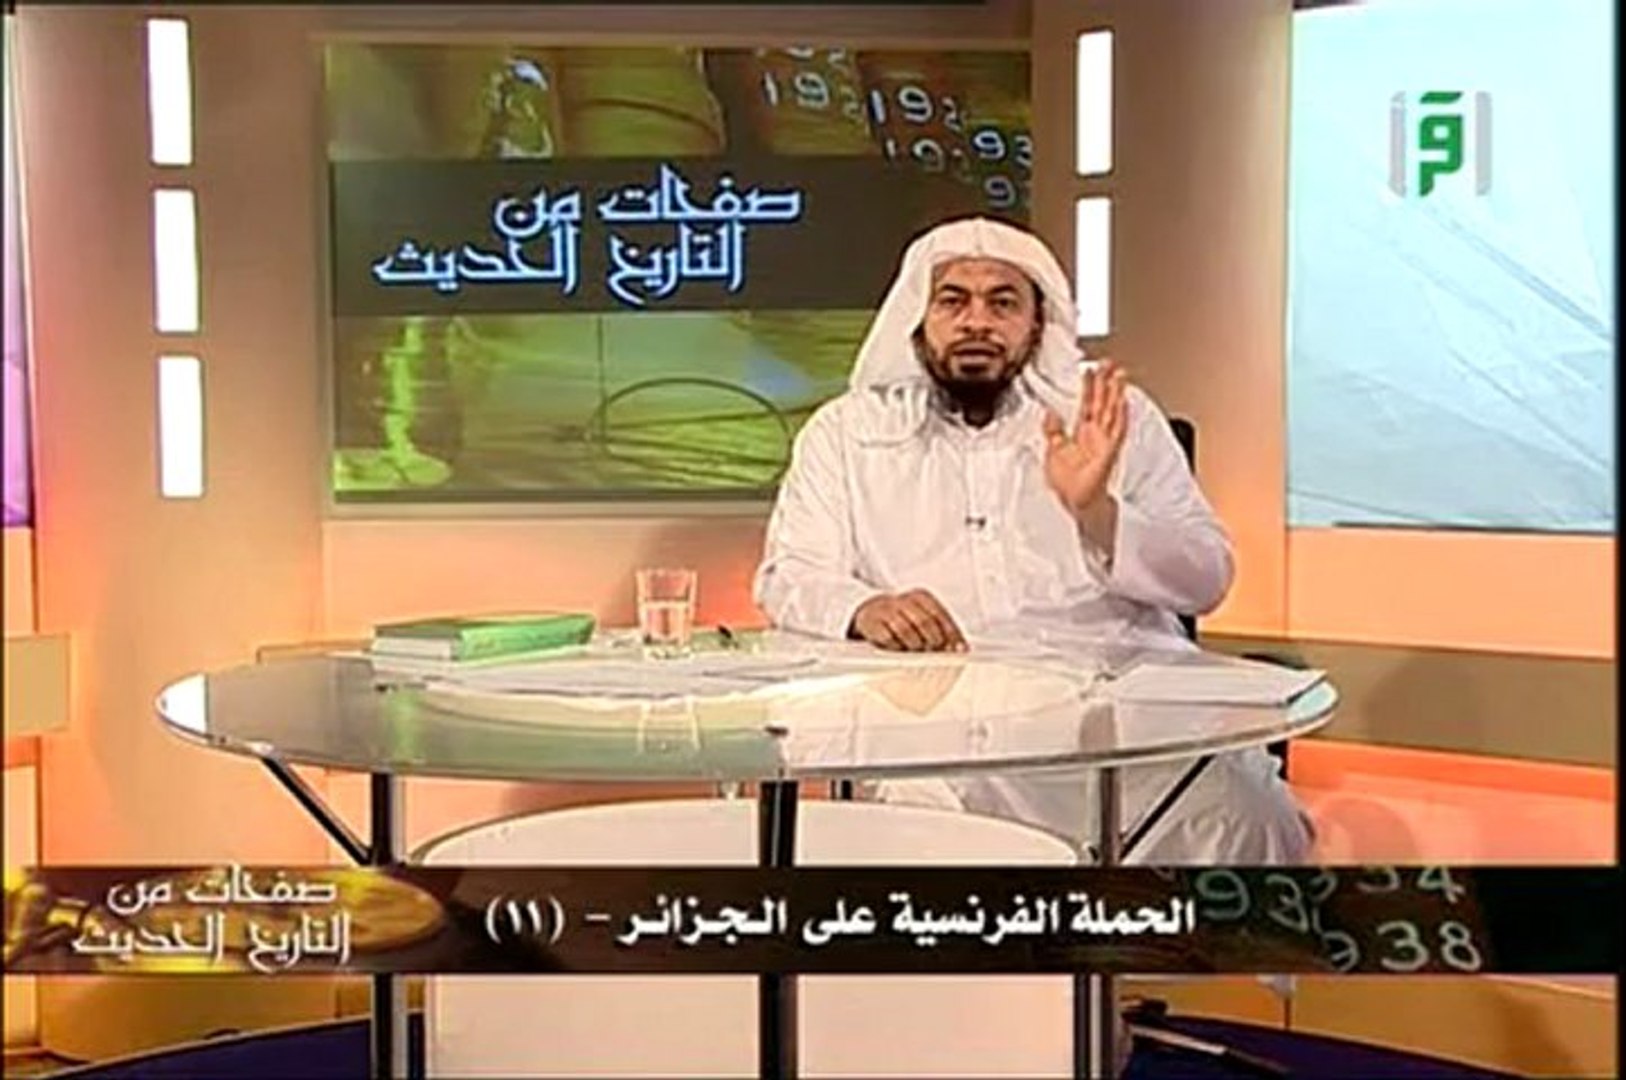 تاريخ الجزائر 11 الشيخ محمد موسى شريف / histoire de l'Algérie partie 11 -  Vidéo Dailymotion